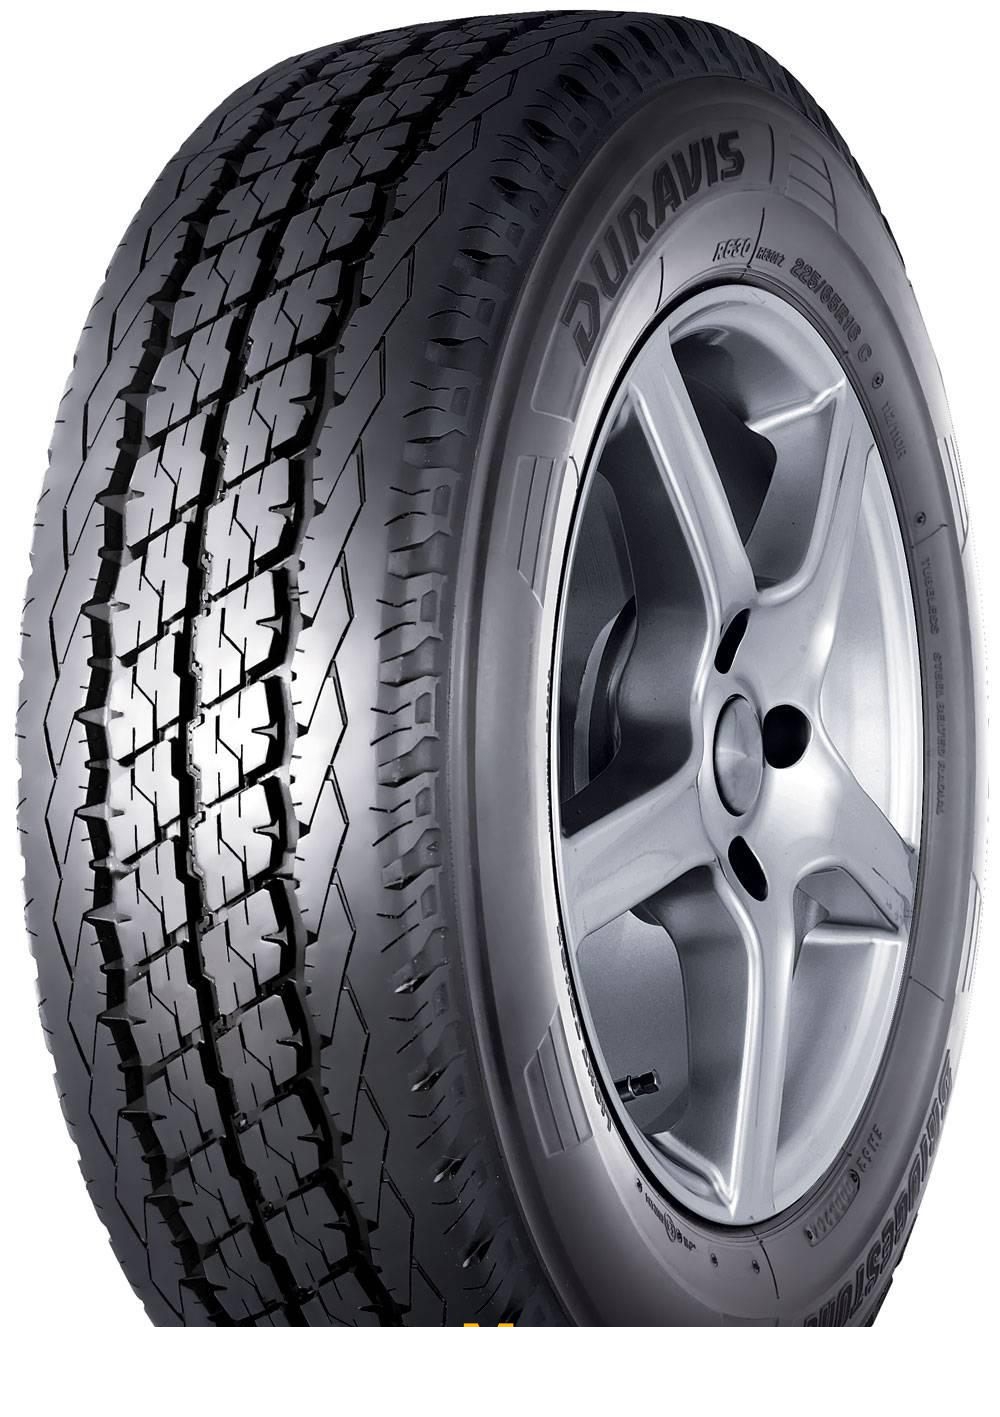 Tire Bridgestone Duravis R630 185/0R14 102R - picture, photo, image